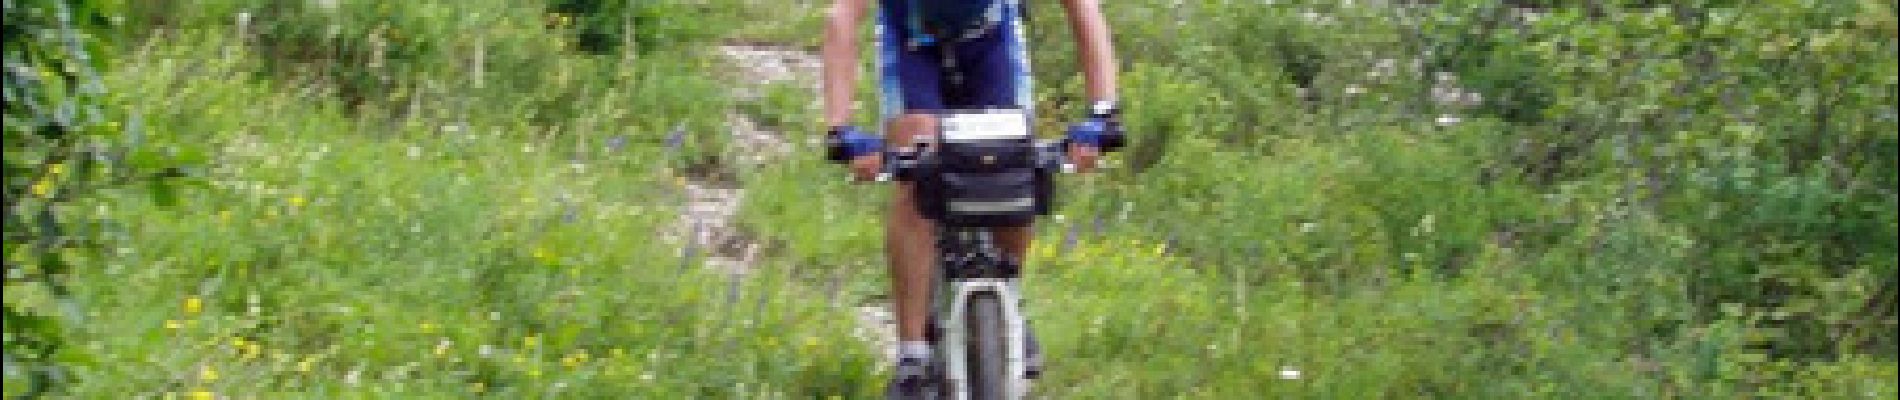 Trail Mountain bike Le Bourg-d'Oisans - Tour VTT intégral du Parc National des Ecrins en 9 jours - Photo